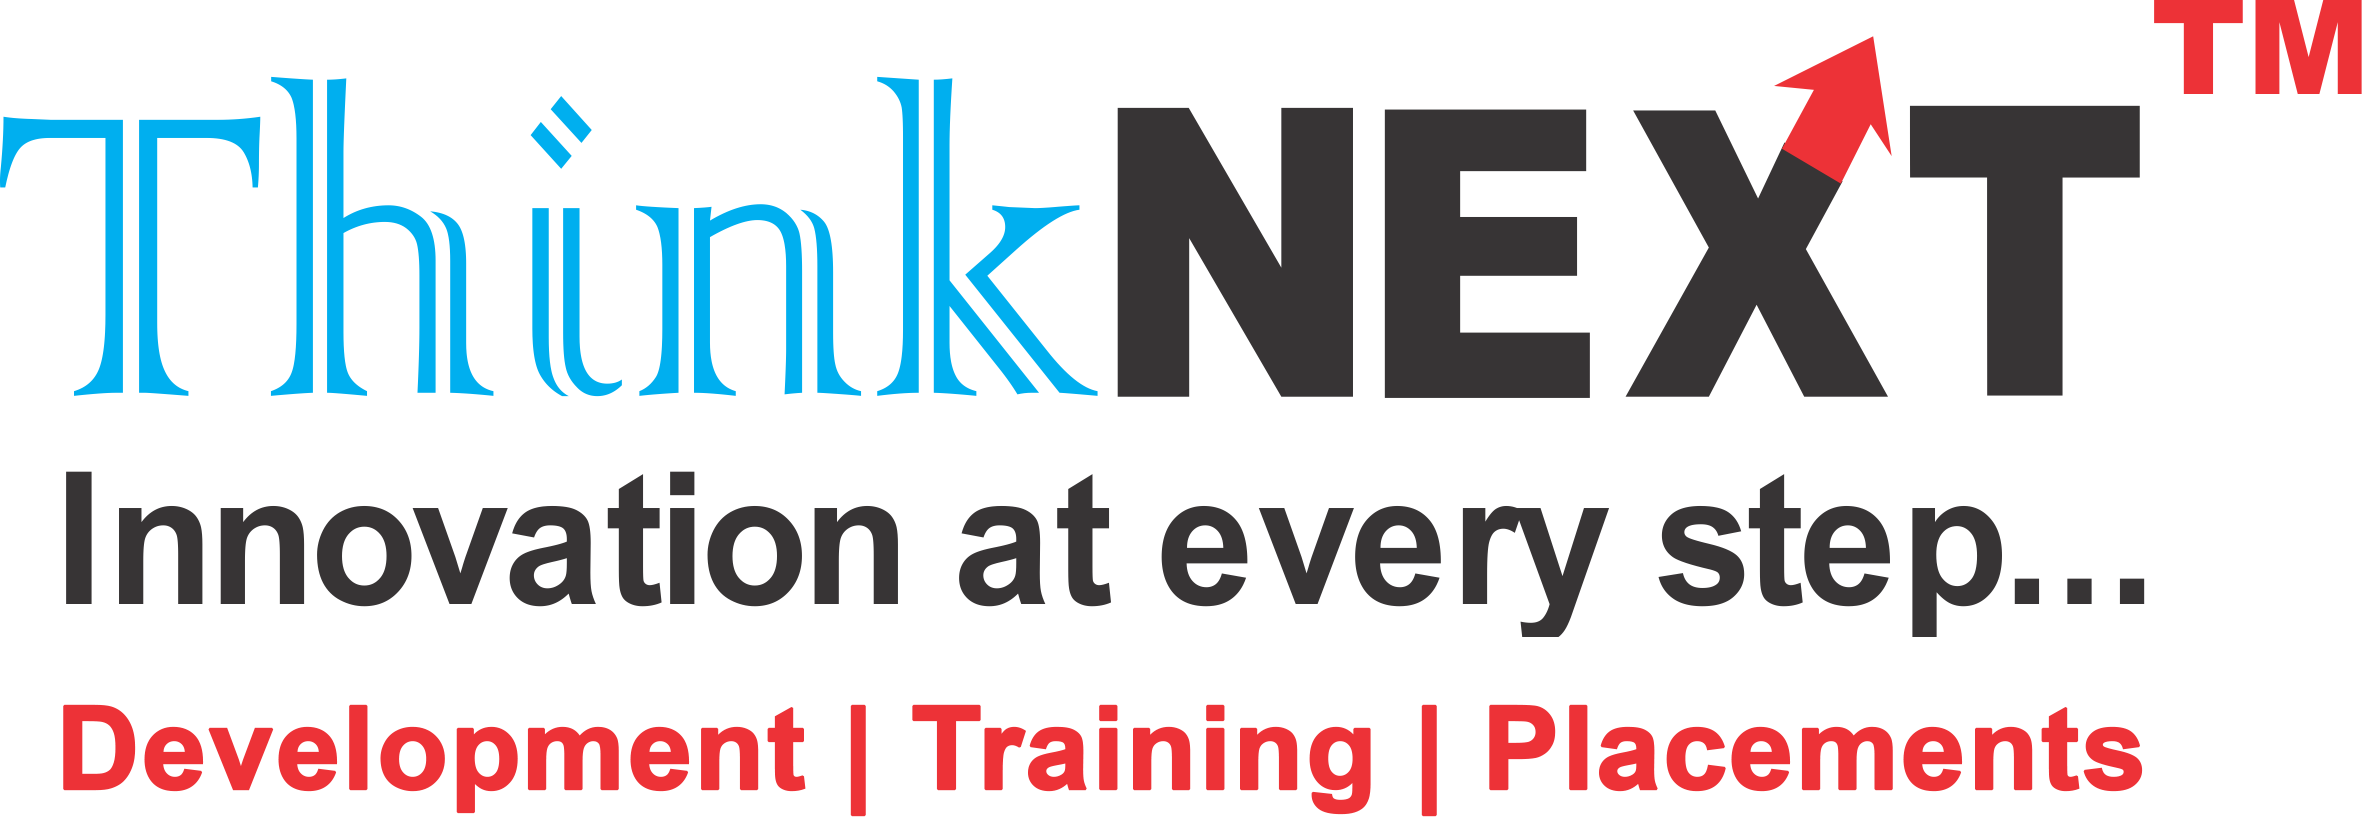 ThinkNEXT-Logo